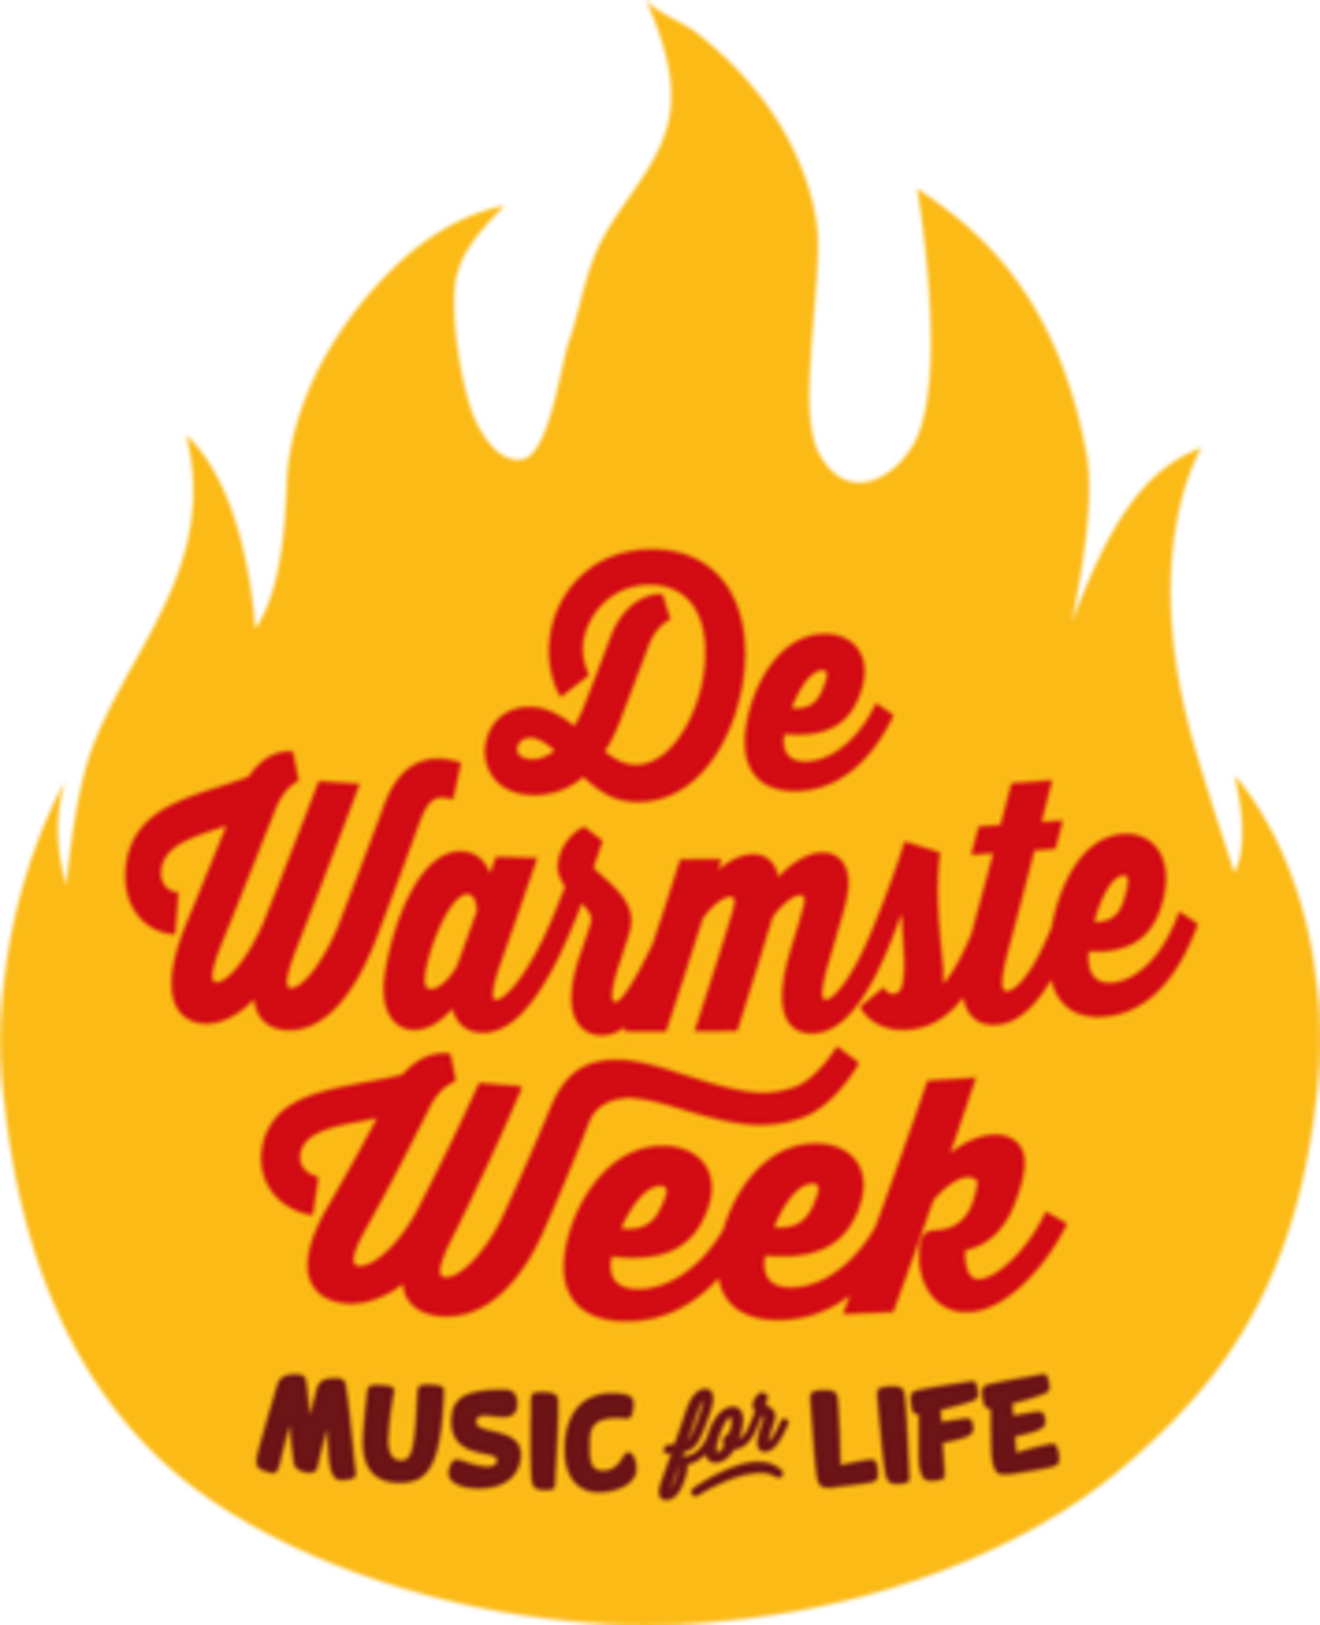 PaardenPunt Vlaanderen steunt het Fonds Lode Verbeeck tijdens de Warmste Week!